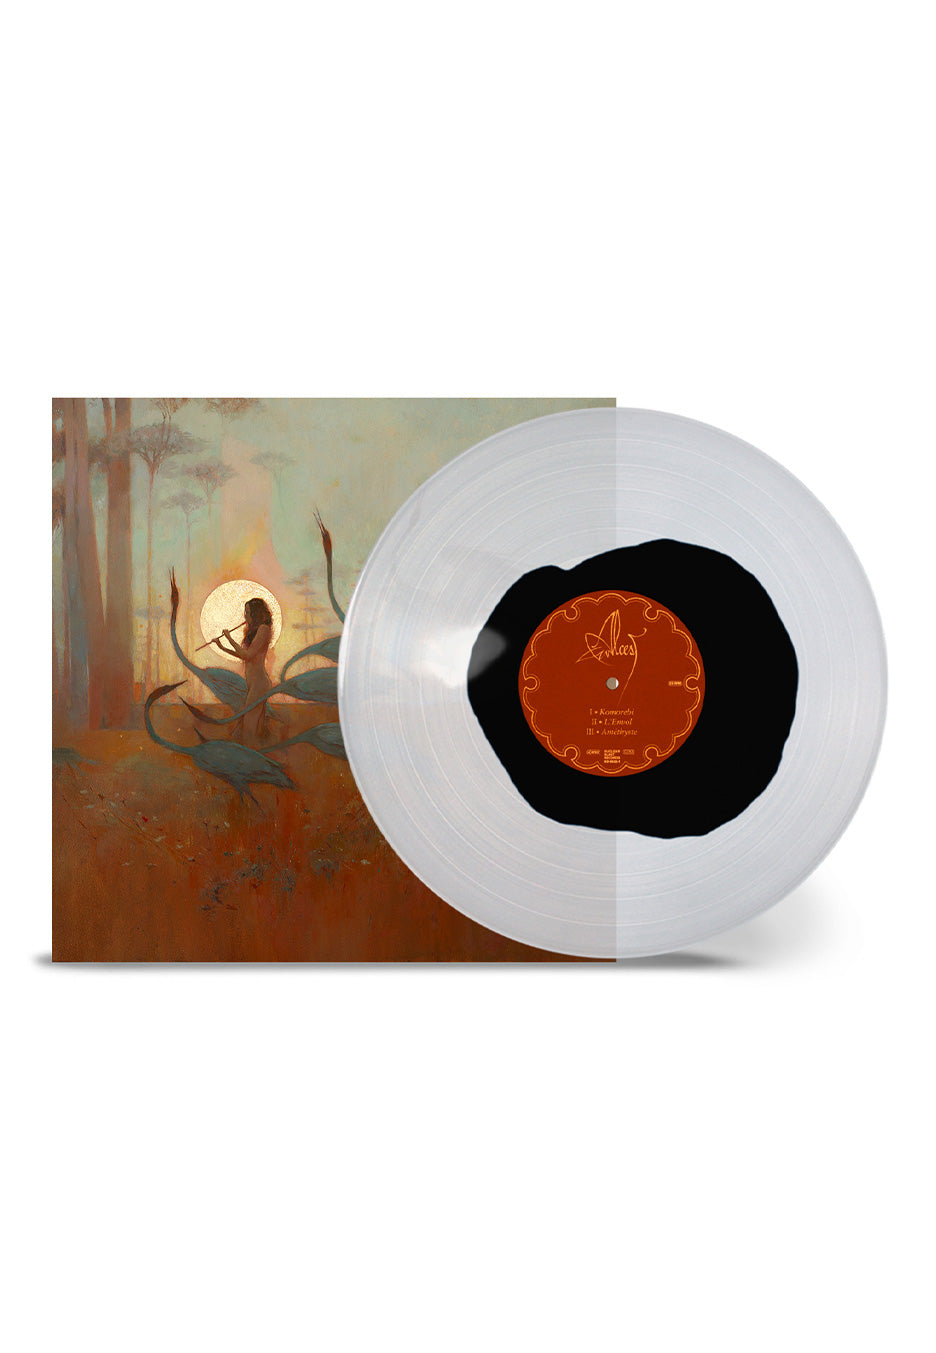 Alcest - Les Chants De L'Aurore Ltd. Clear/Black Yolk - Colored Vinyl